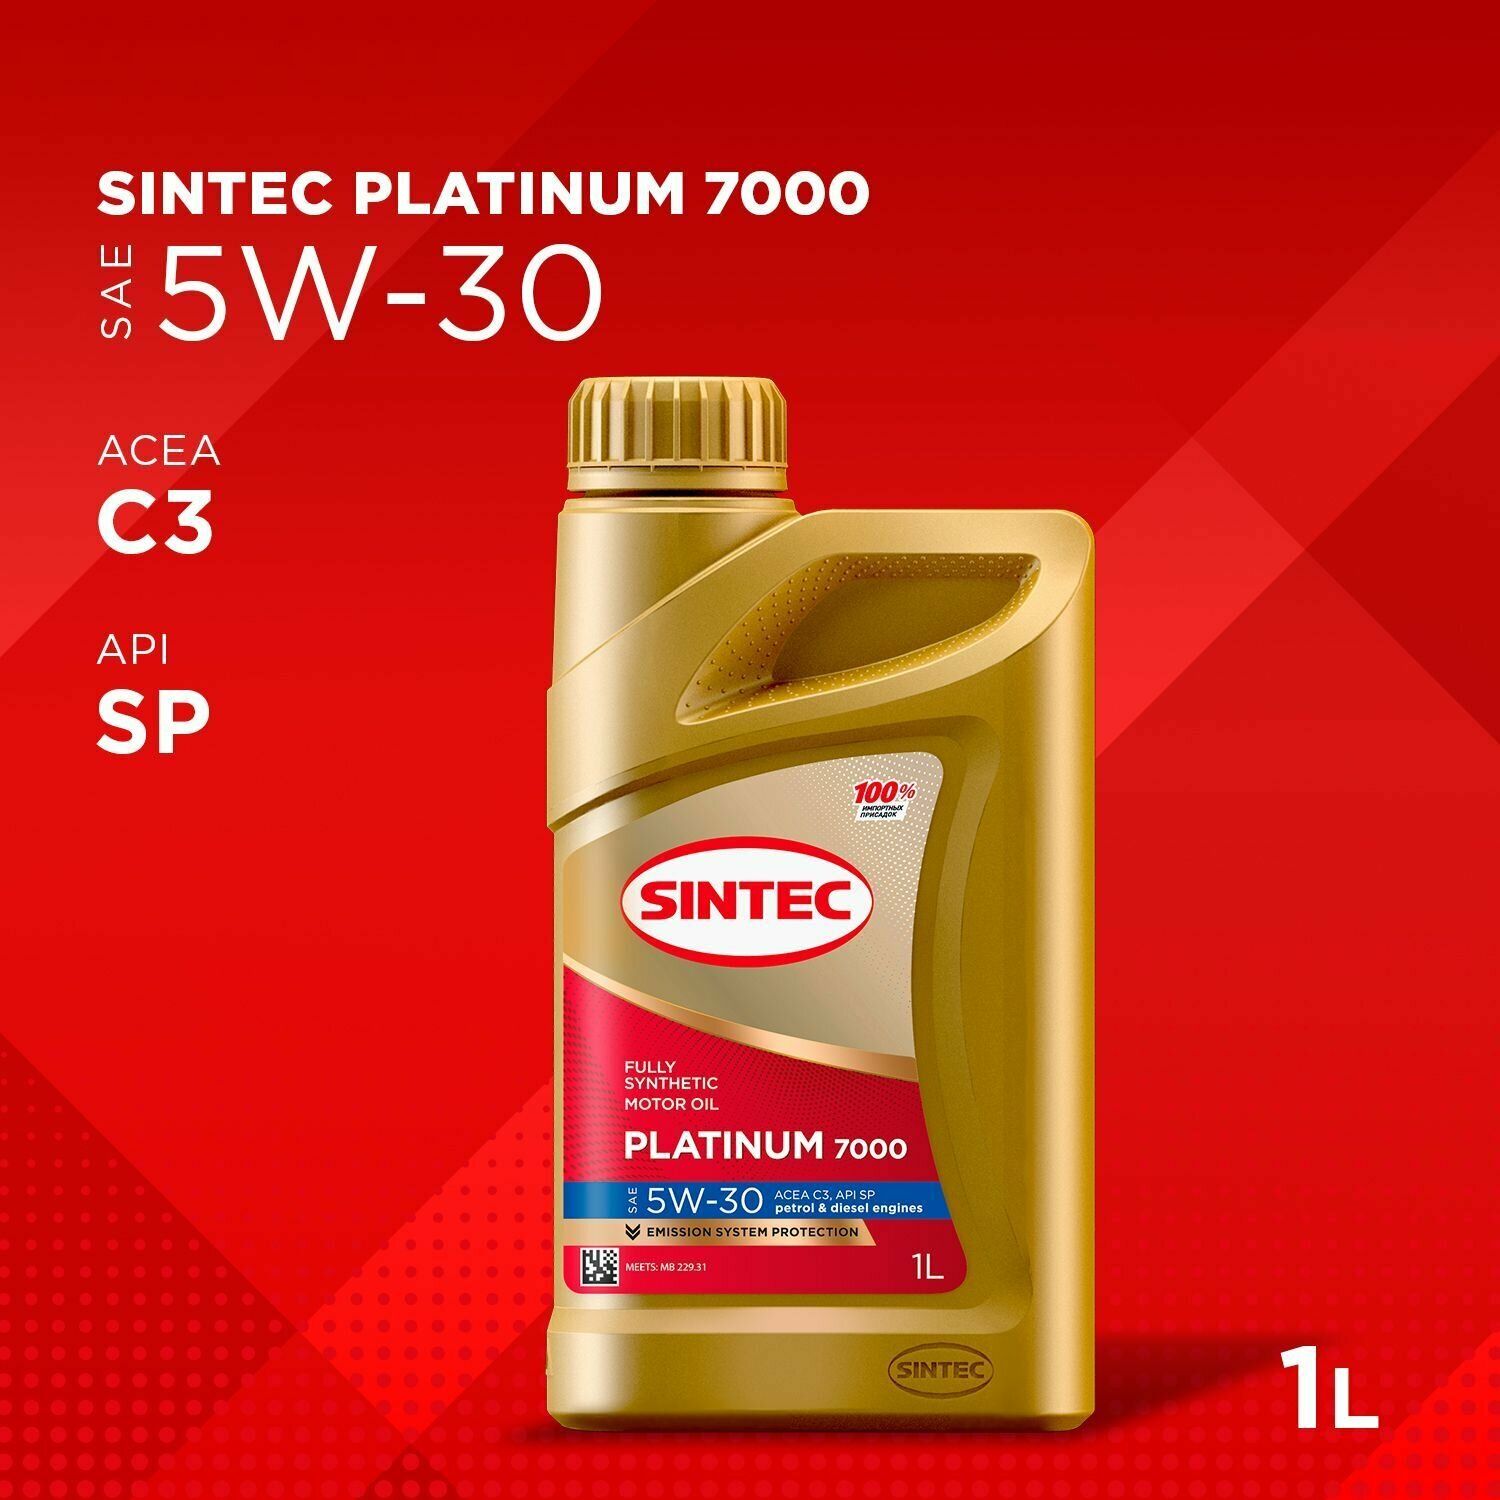 Синтетическое моторное масло SINTEC PLATINUM SAE 5W-30 API SP, ACEA C2/C3, 1 л